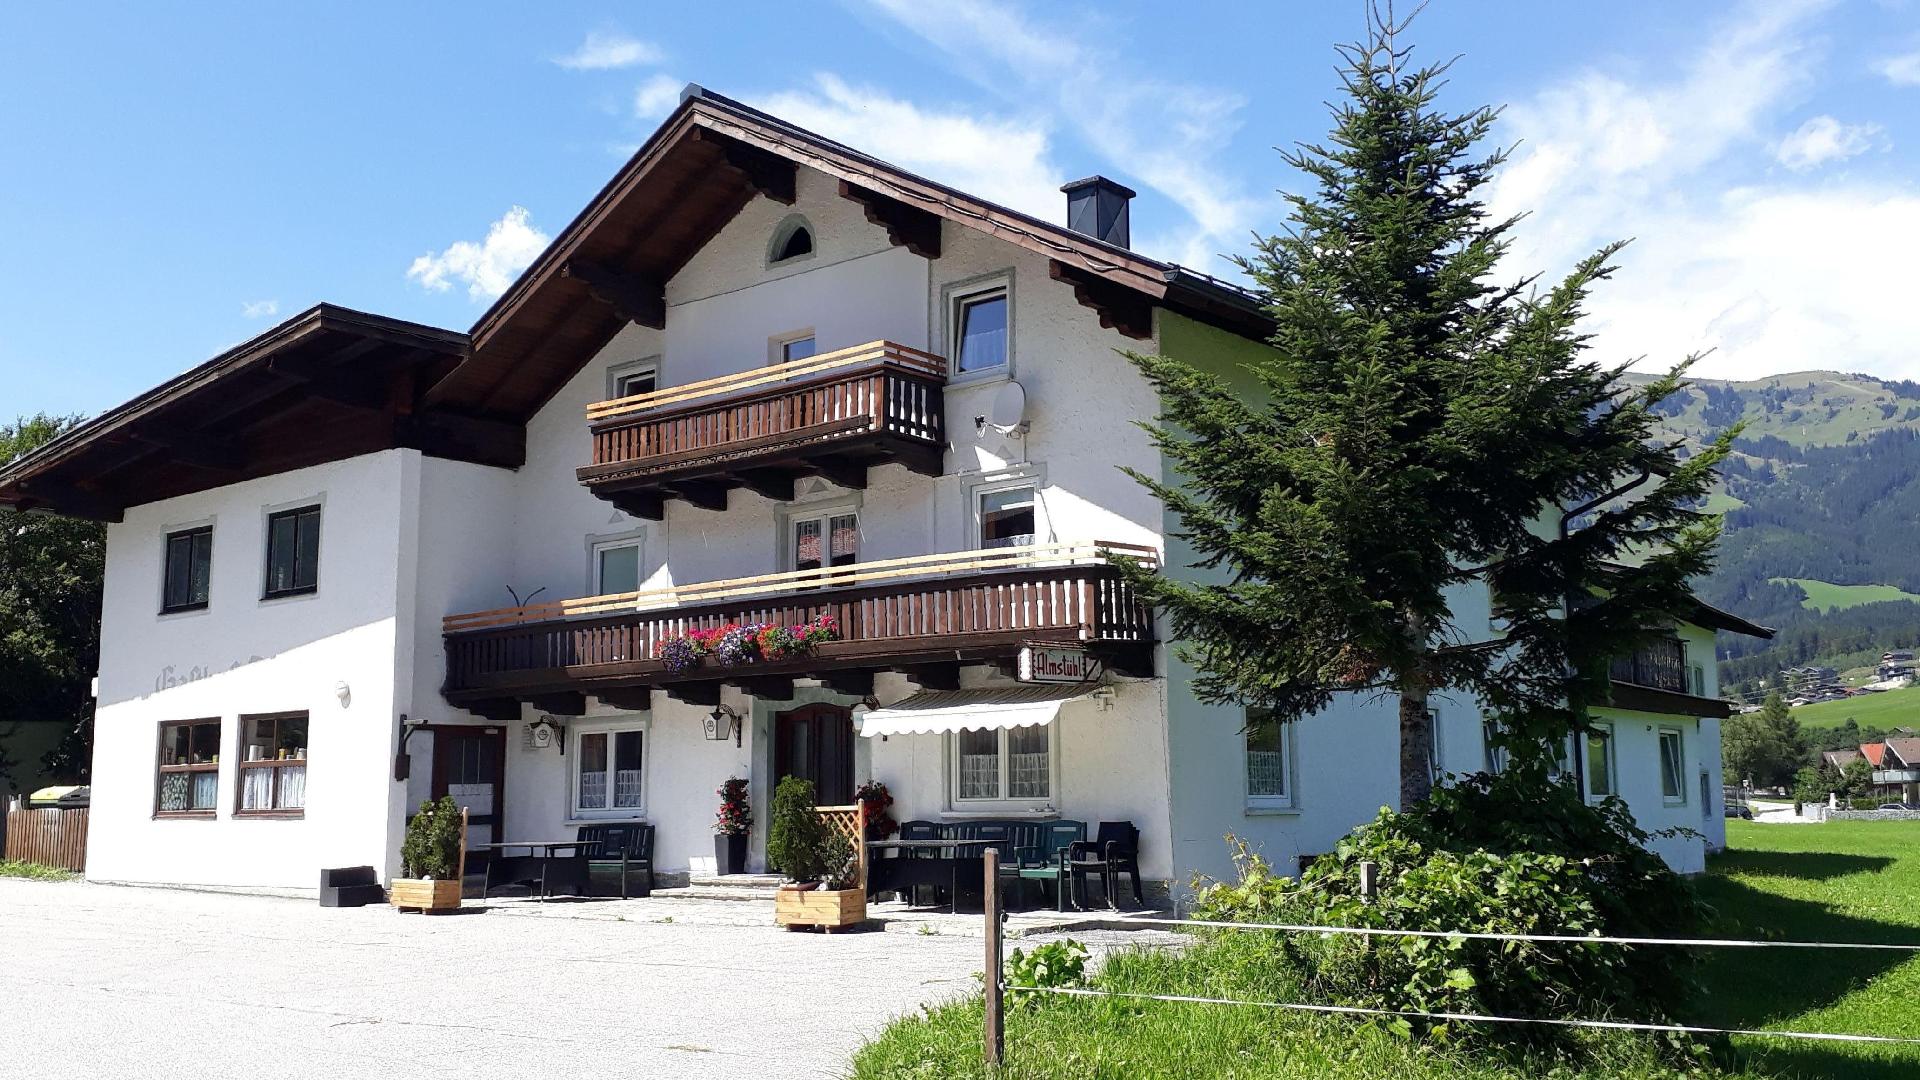 Ferienhaus Dankl in Hollersbach  in Österreich